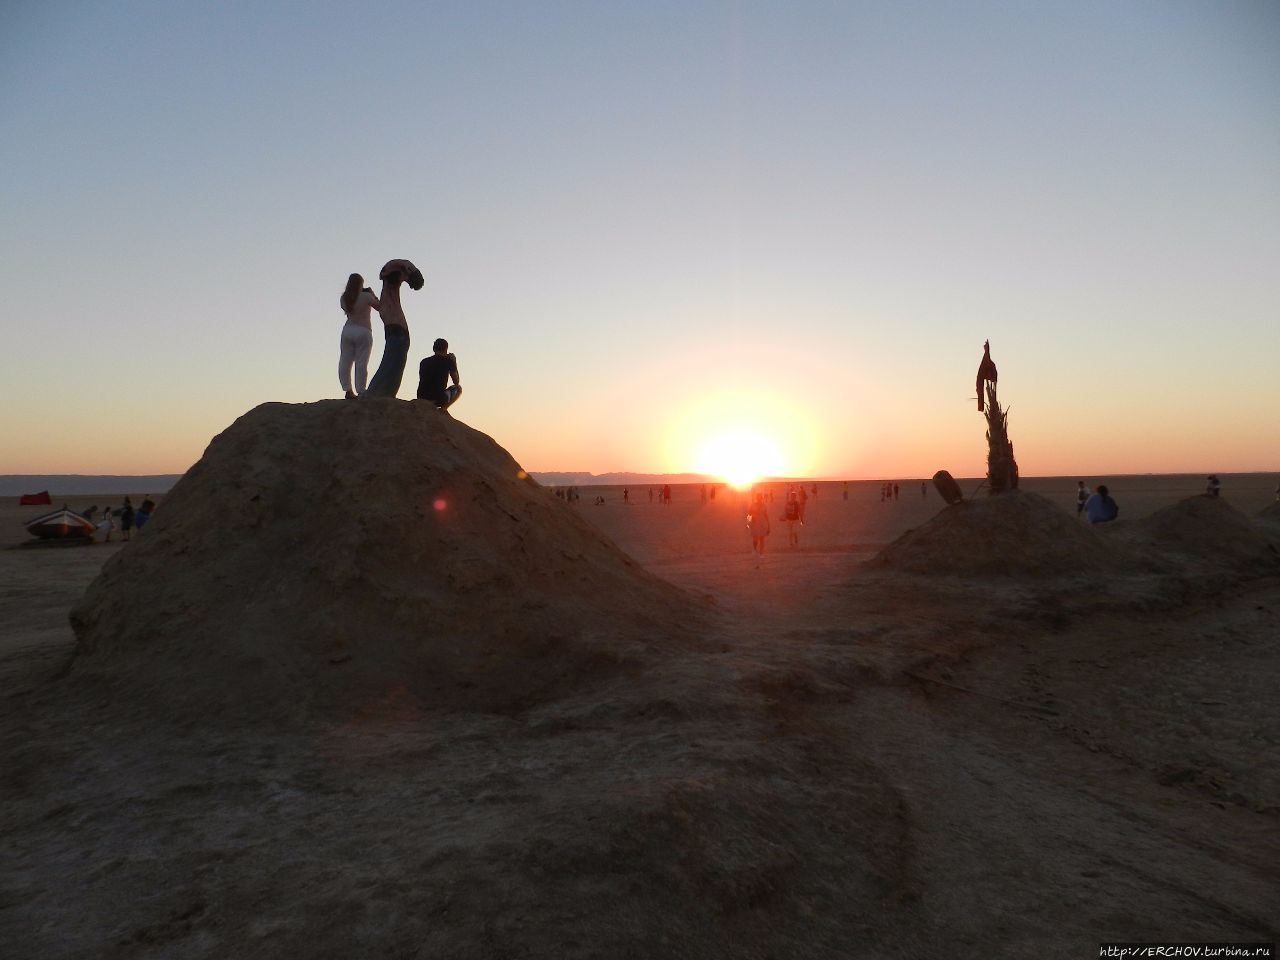 Экскурсия в Сахару. Ч — 5. Соляное озеро Шотт-Эль-Джерид Озеро Шотт-эль-Джерид, Тунис